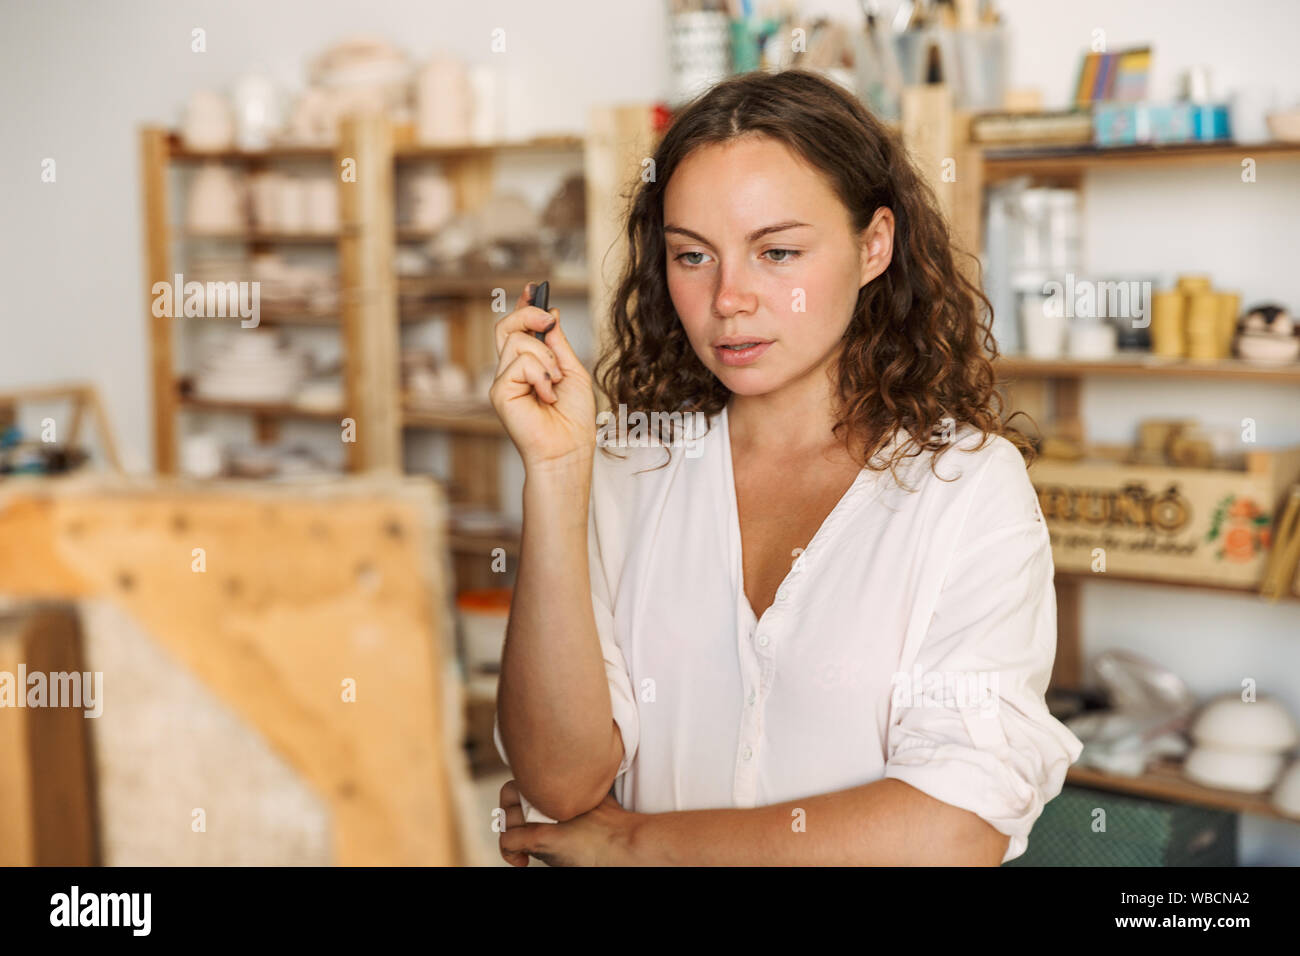 Portrait von nachdenklich konzentriert künstlerische woman holding Stück Kreide beim Zeichnen Bild auf Leinwand in Werkstatt oder Master Klasse Stockfoto